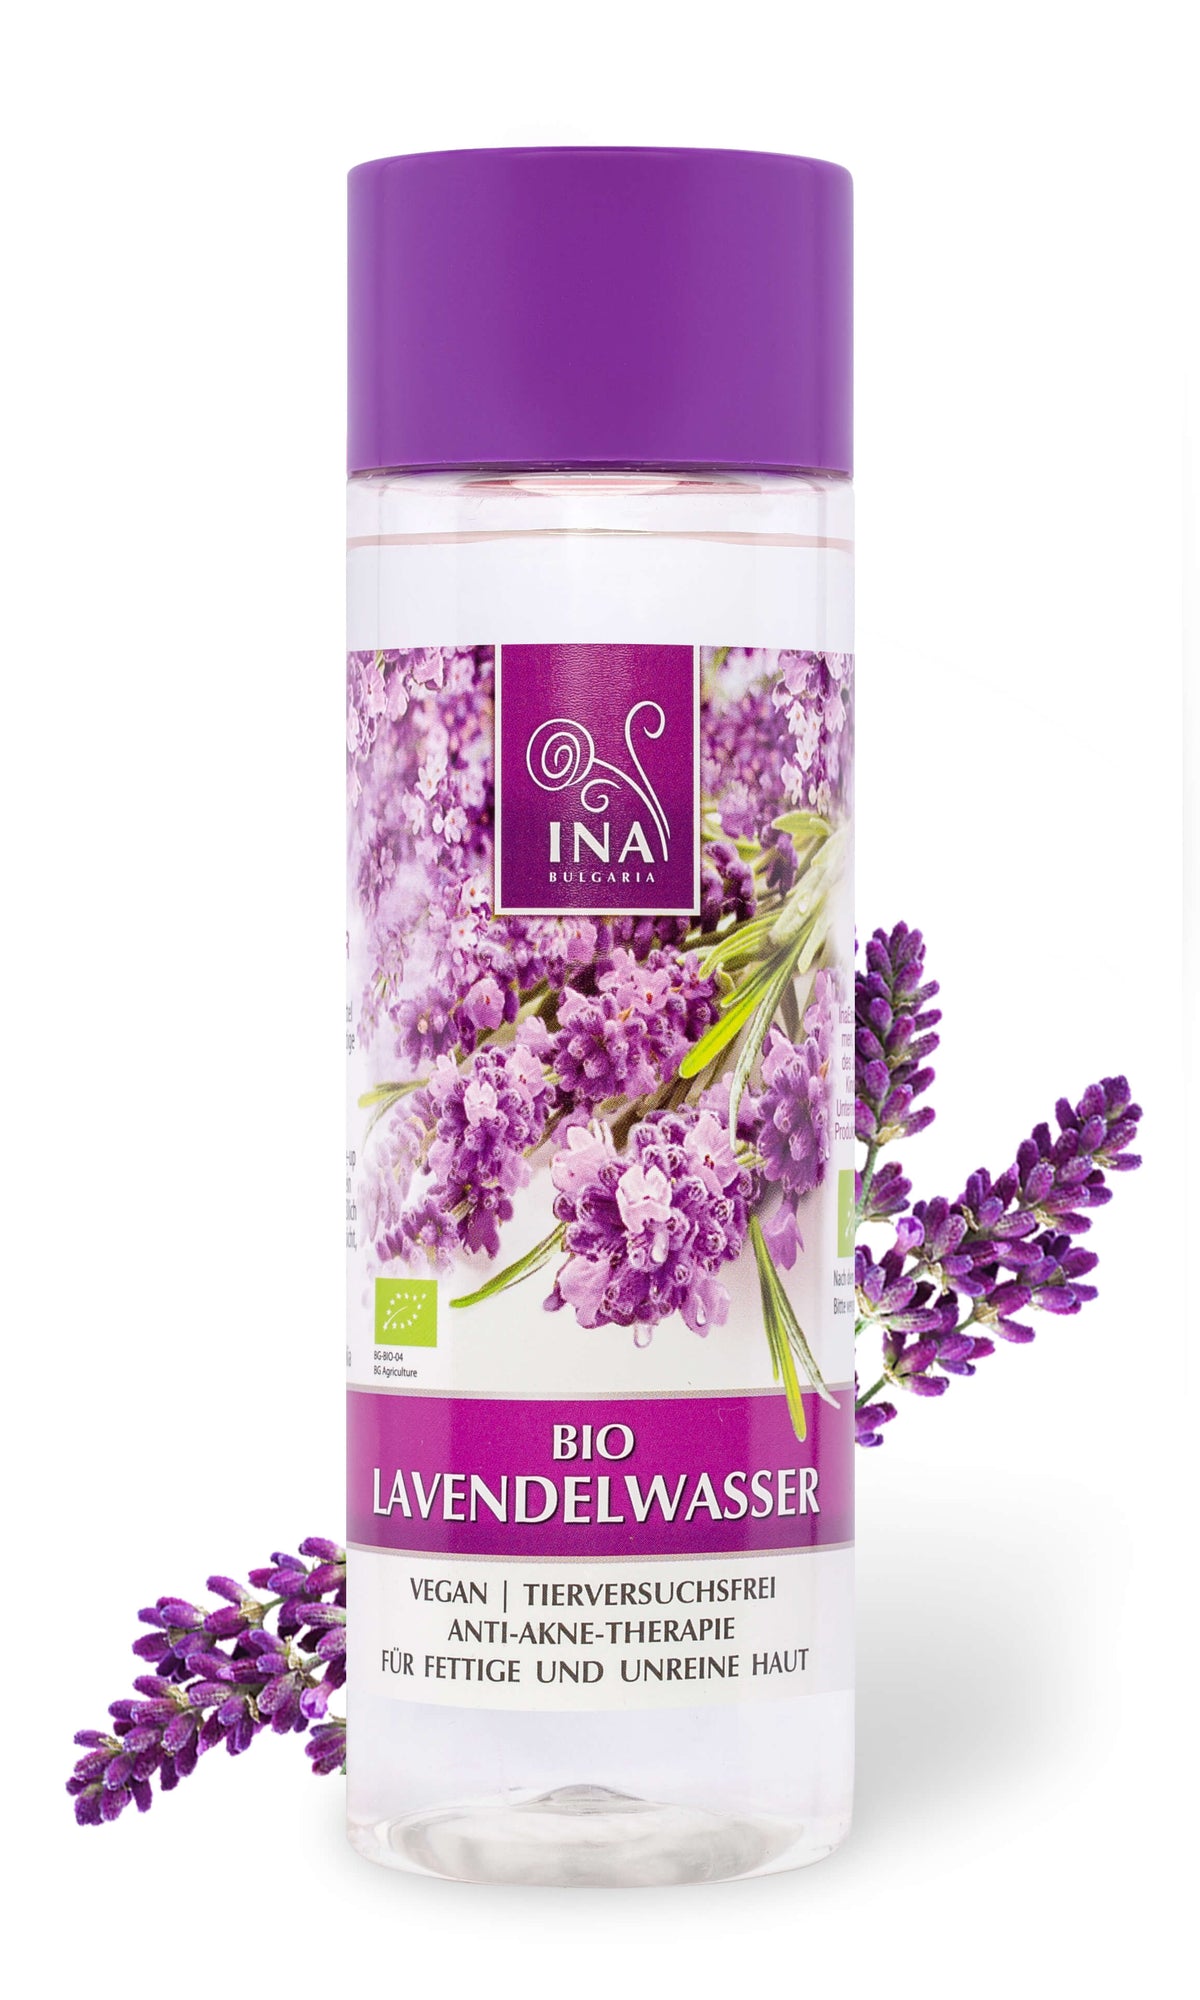 Bio Lavendelwasser für fettige Haut (Hydrolat)